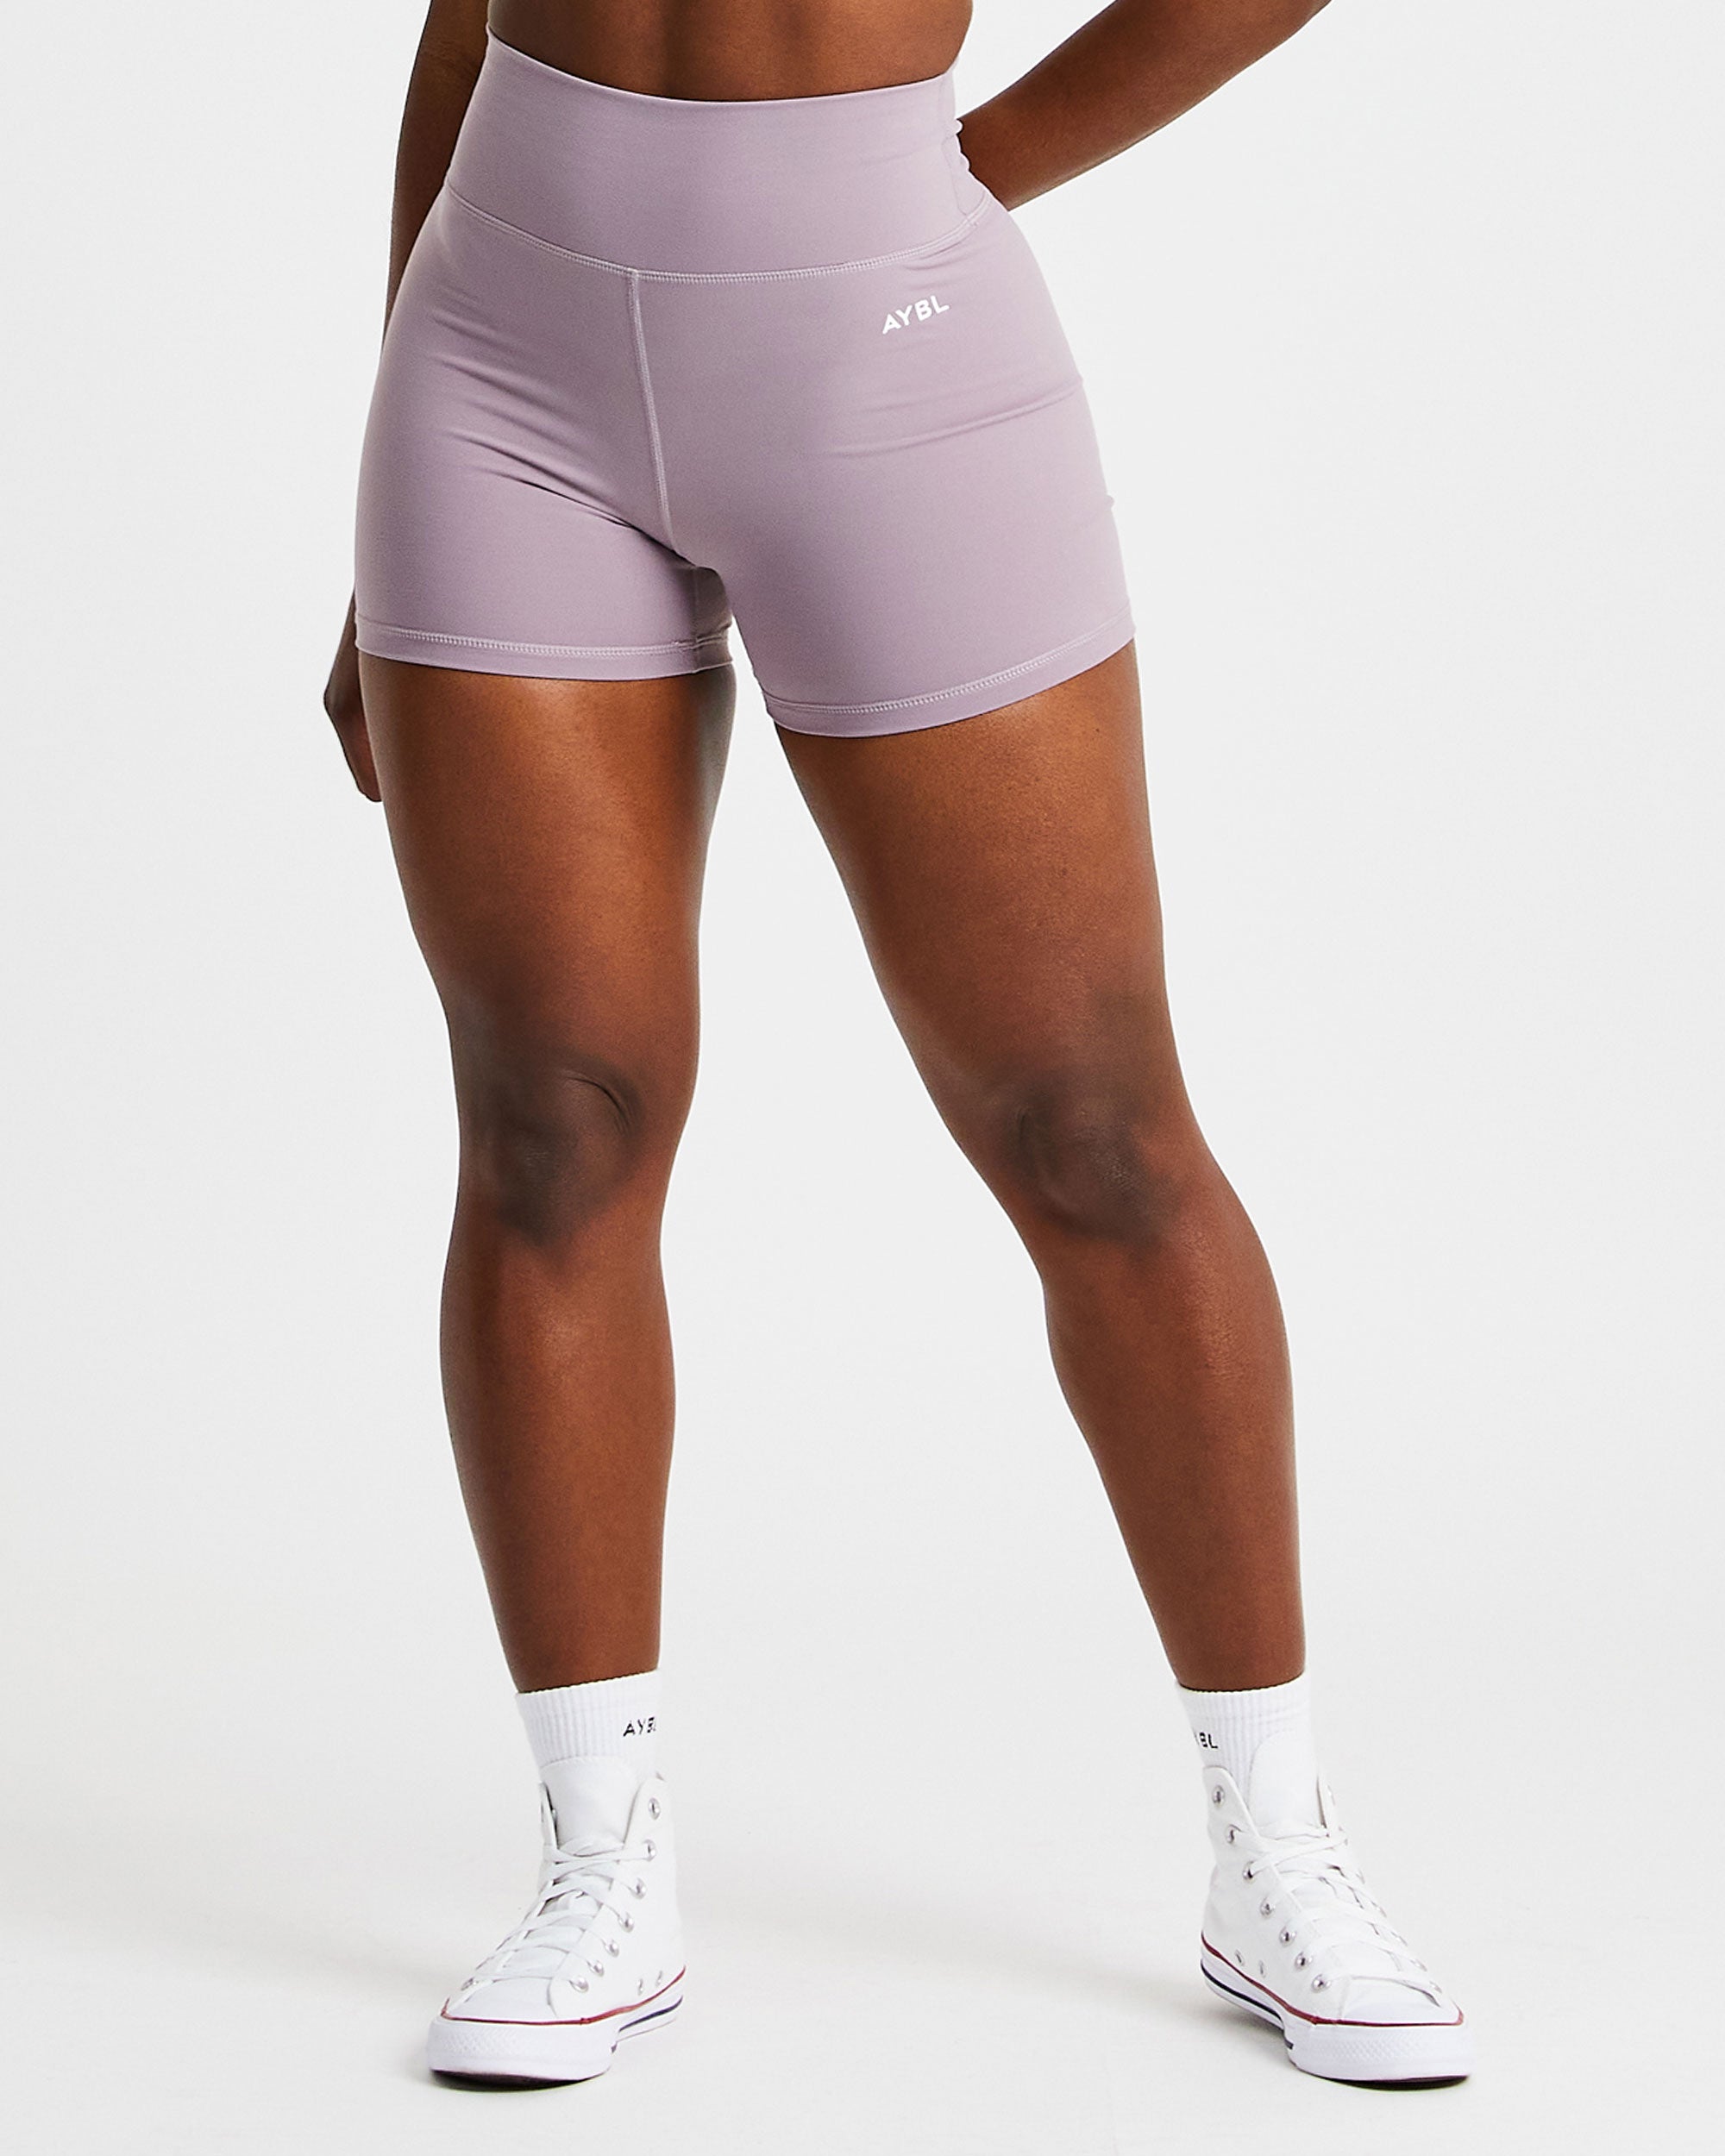 AYBL Asphalt Grey Core Shorts  Shorts, Low intensity workout